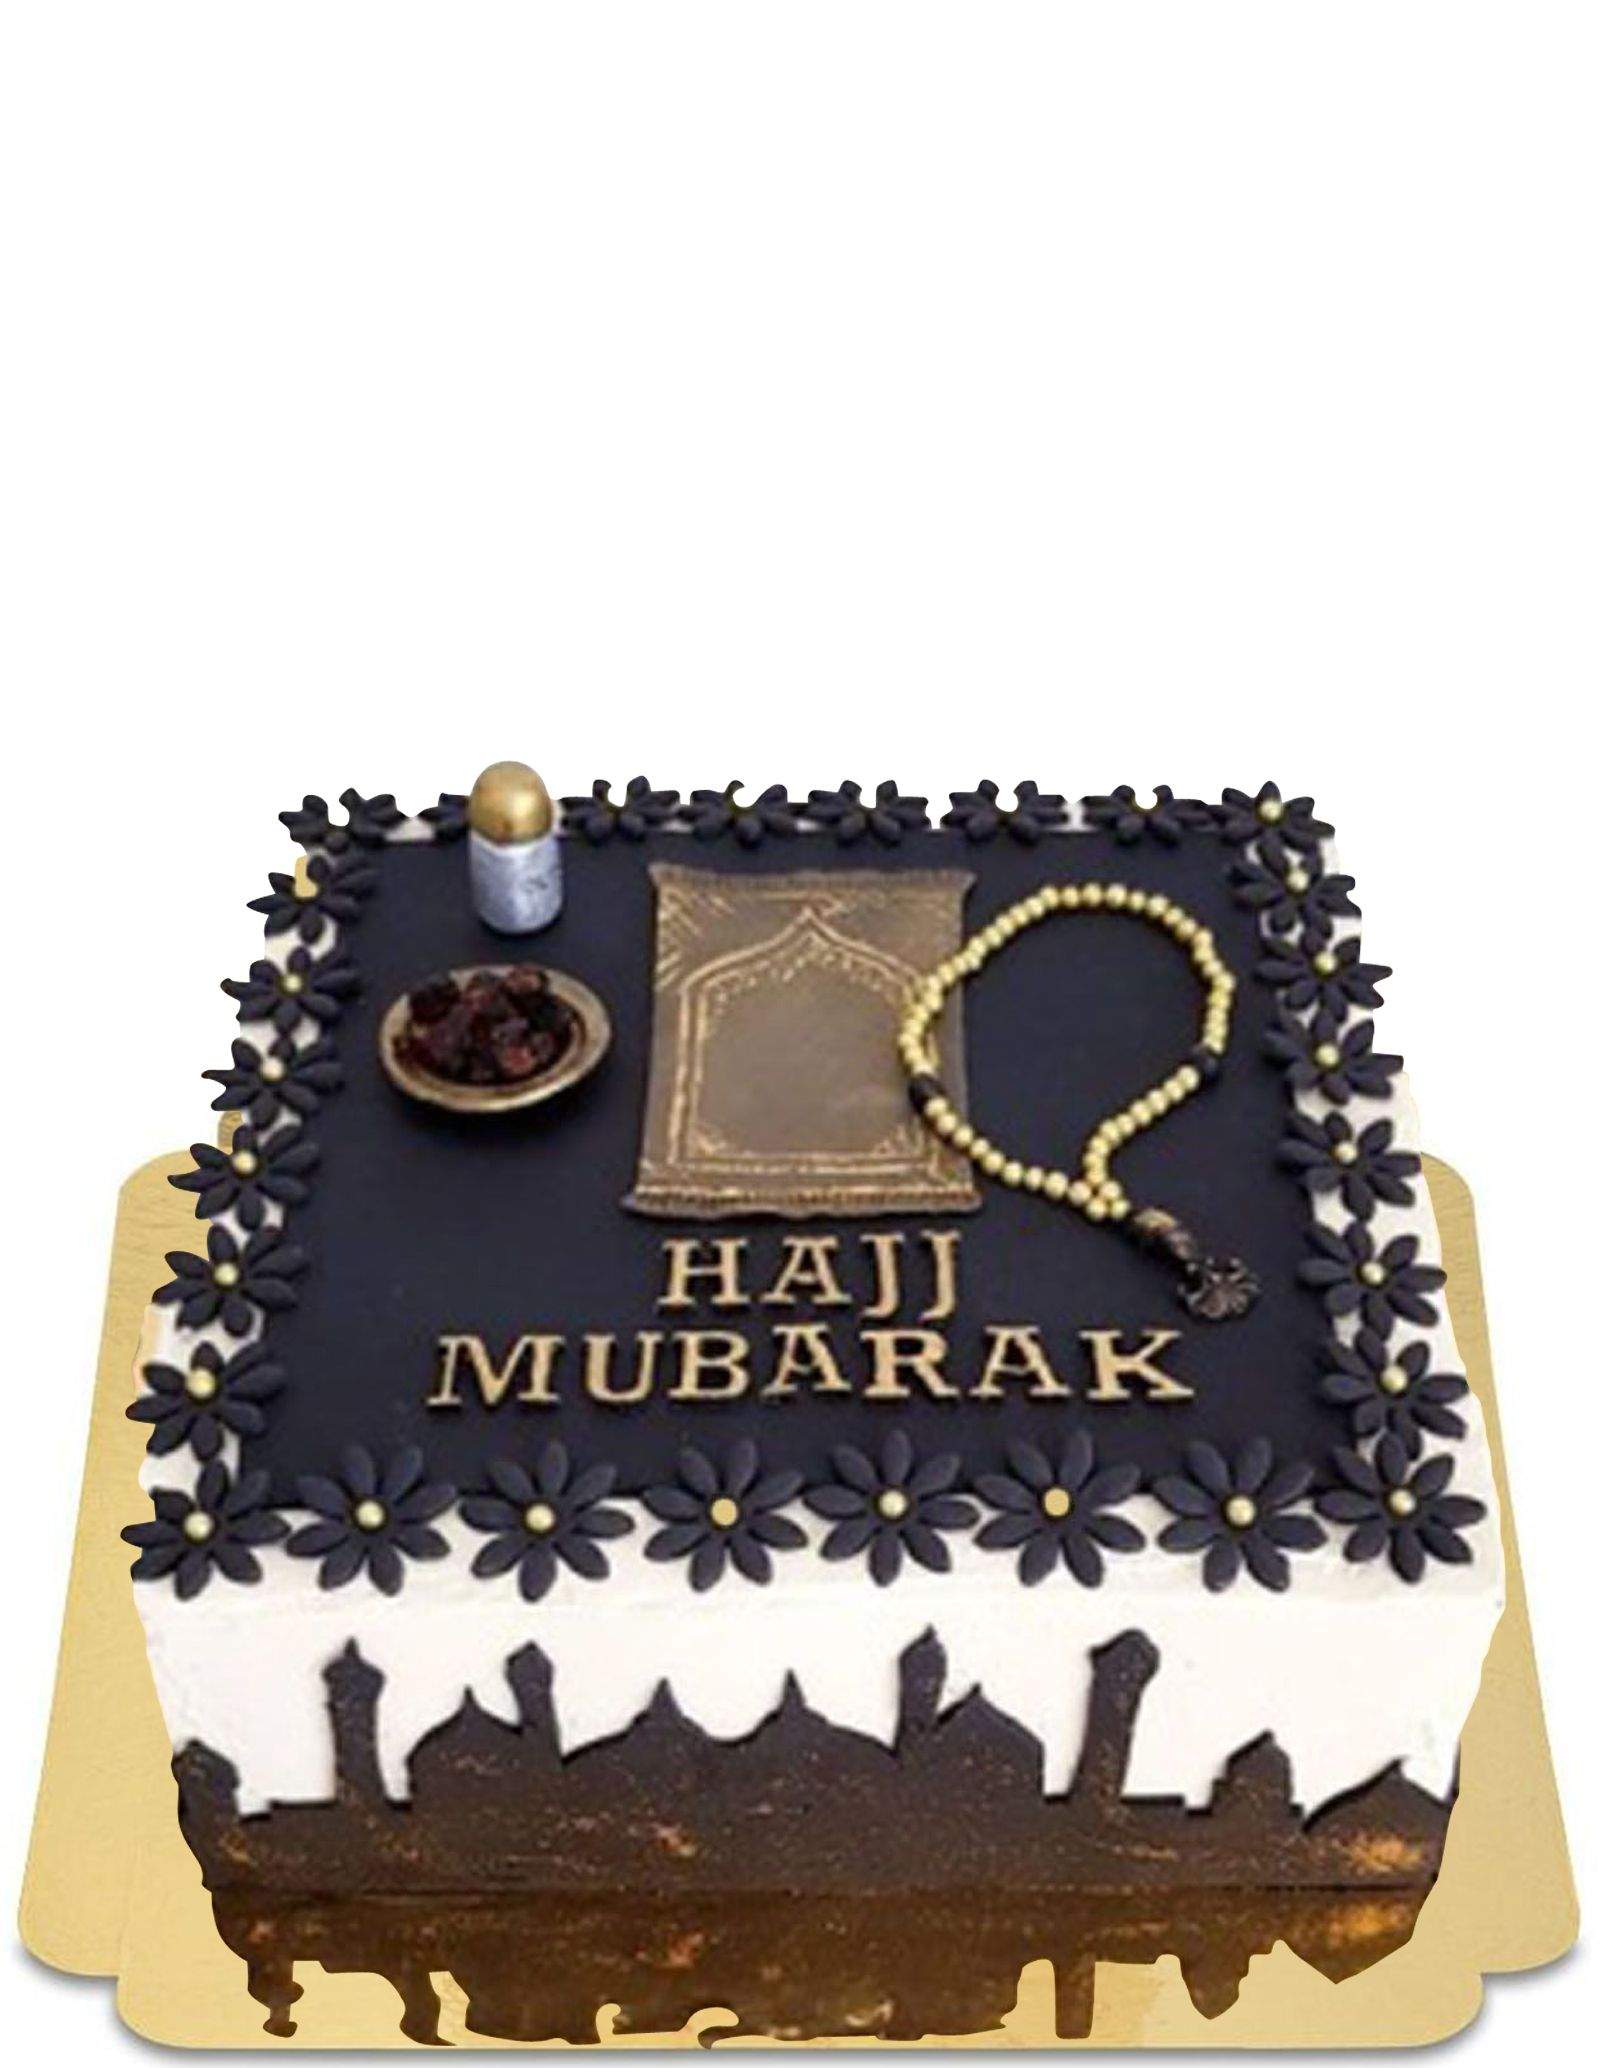 Gâteau Hajj Mubarak , vegan et sans gluten